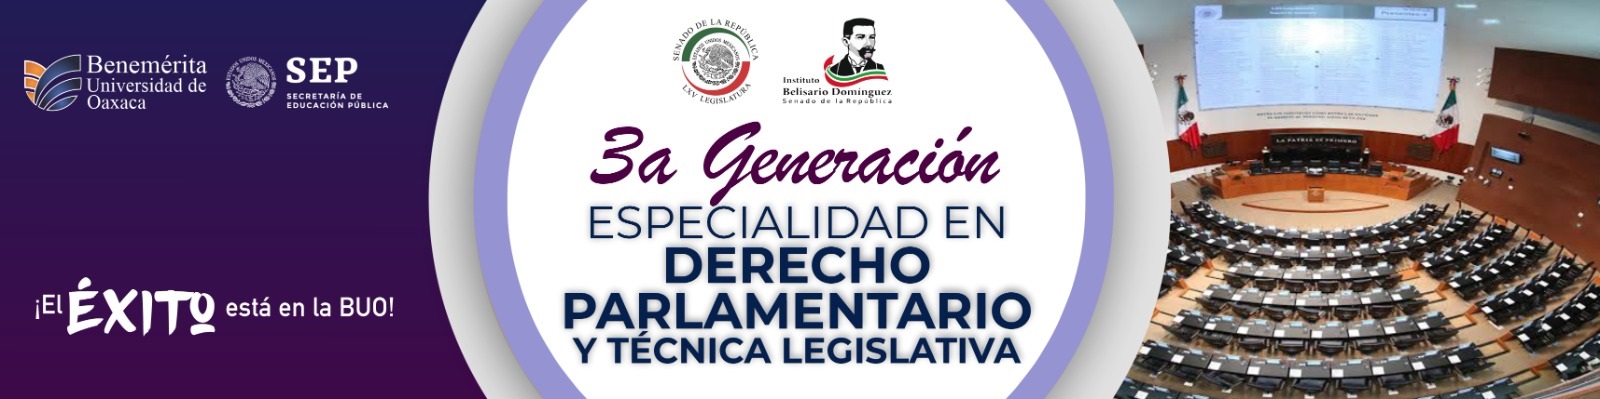 TERCERA GENERACIÓN Especialidad en Derecho Parlamentario y Técnica Legislativa